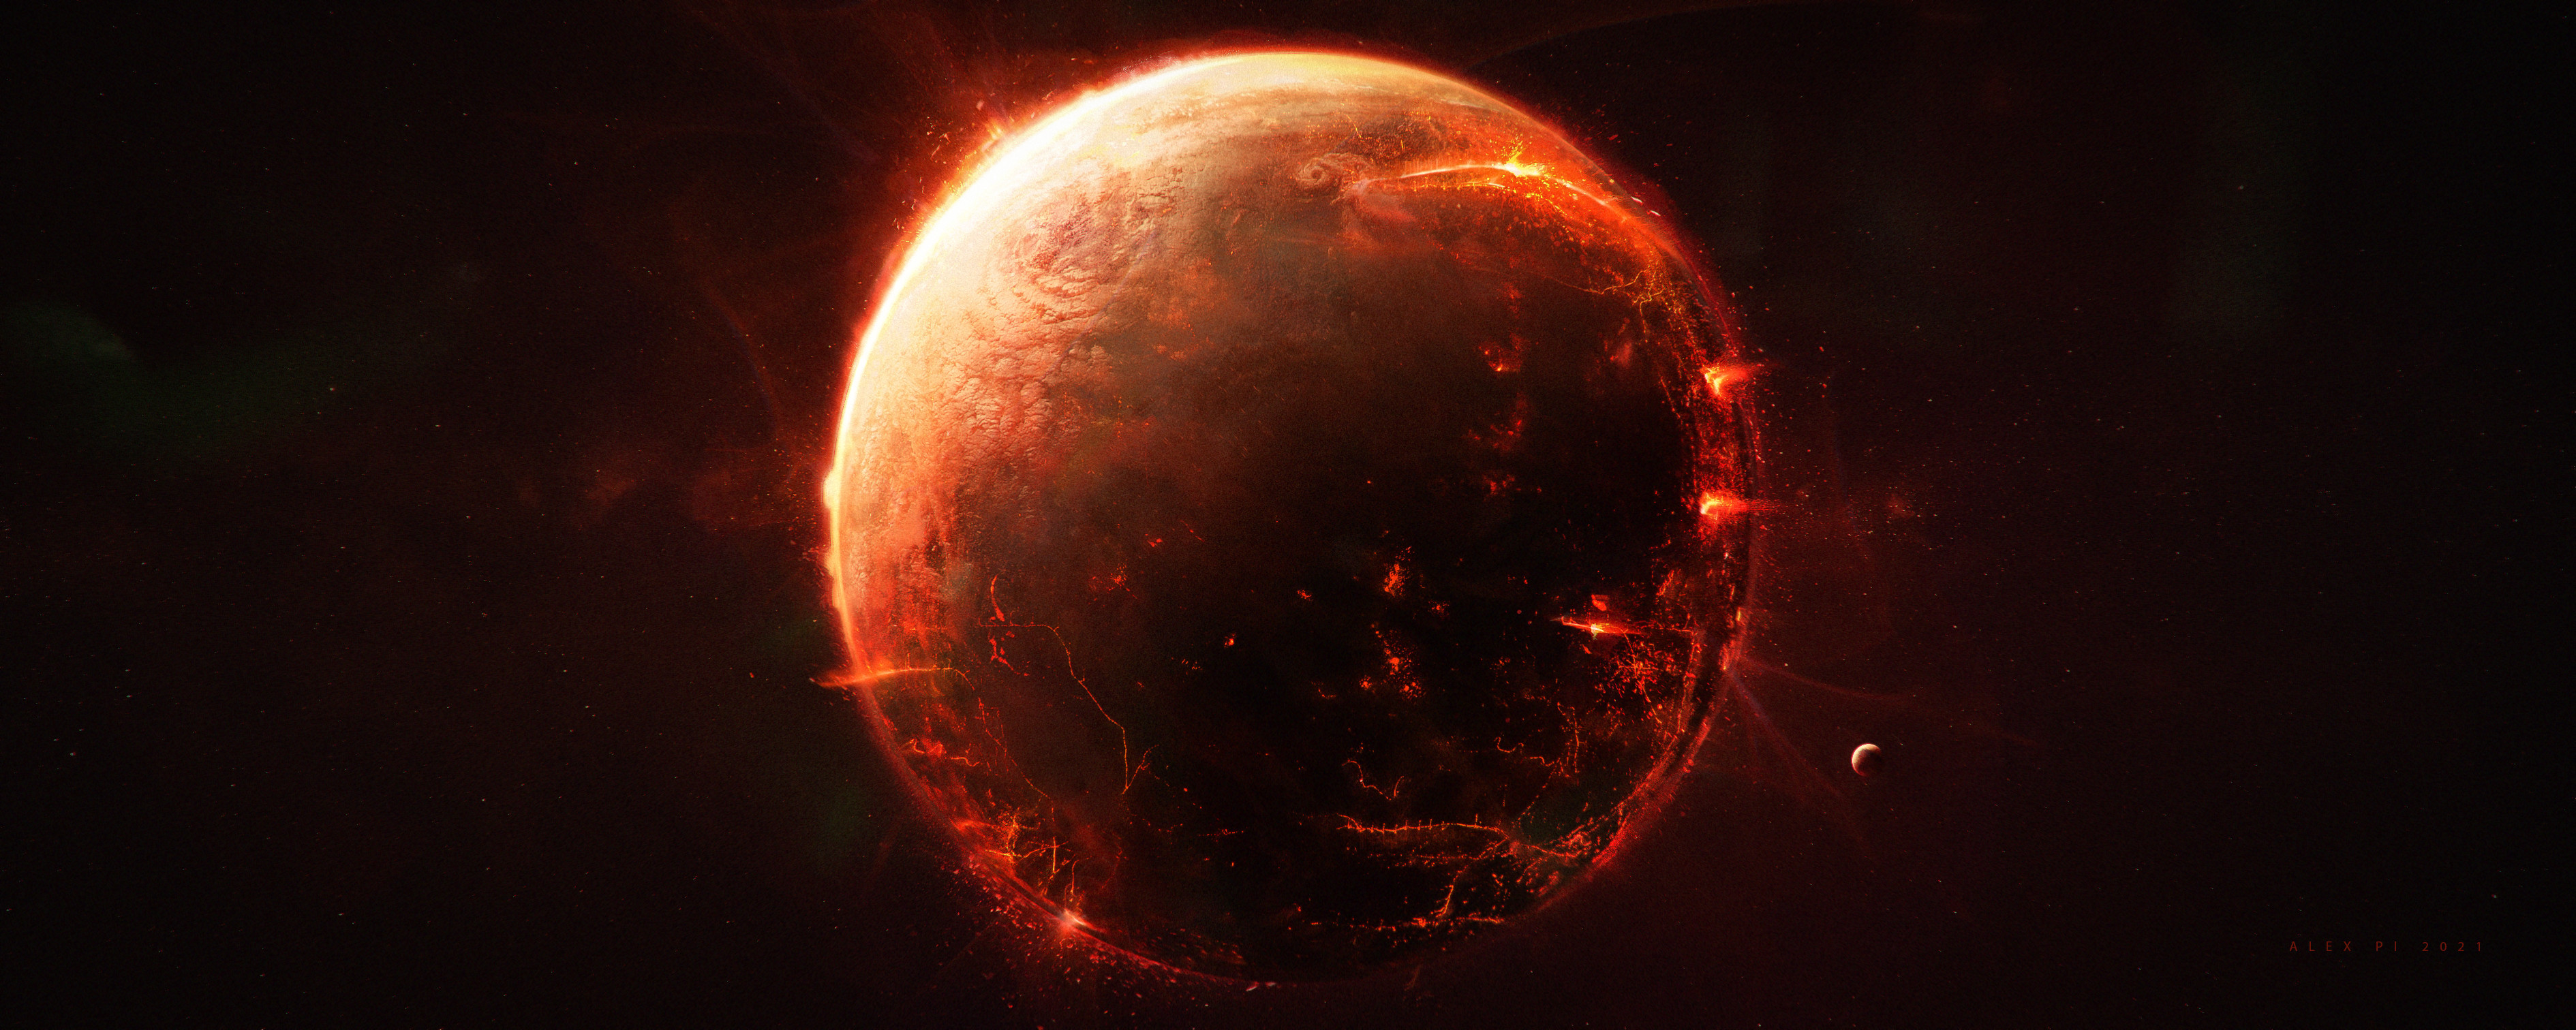 alex-pi-fiery-planet-01-2